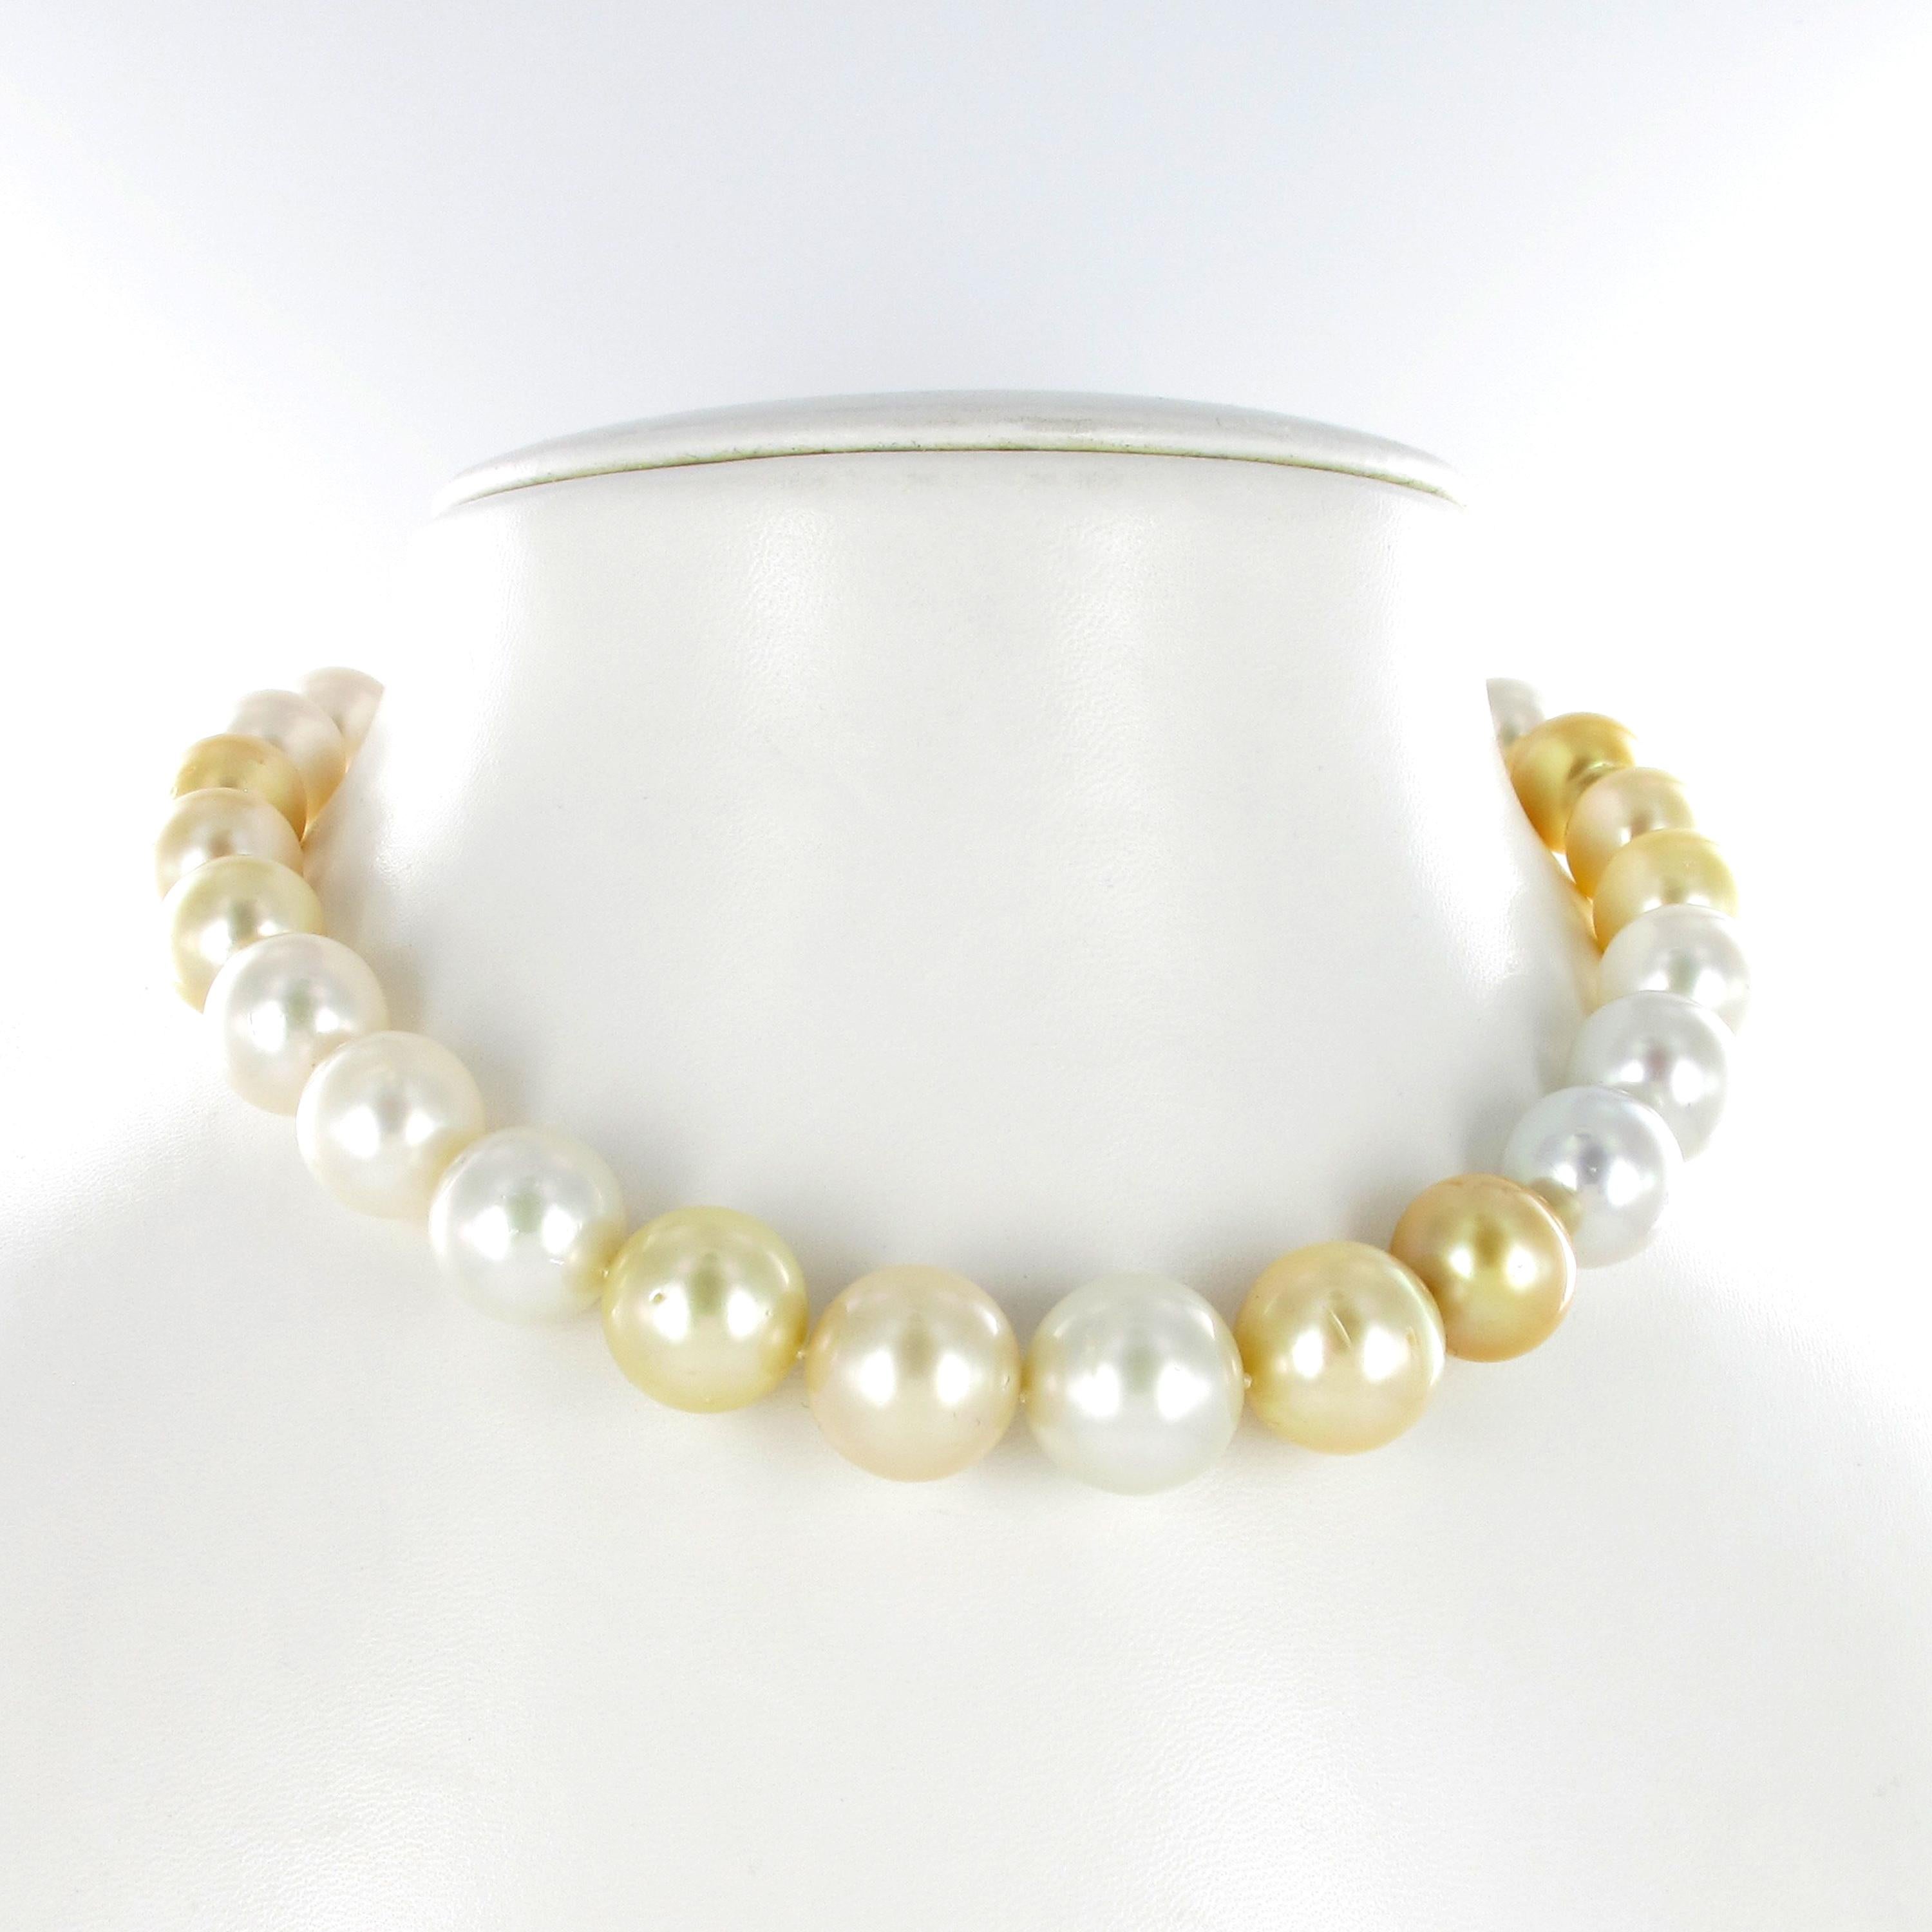 Ce collier est composé de 29 perles de culture blanches et dorées des mers du Sud, de 12,8 mm à 16,5 mm. Le fermoir à baïonnette/tube en or jaune 18 carats est élégamment dissimulé dans la plus petite perle de culture. 
Les perles sont de forme